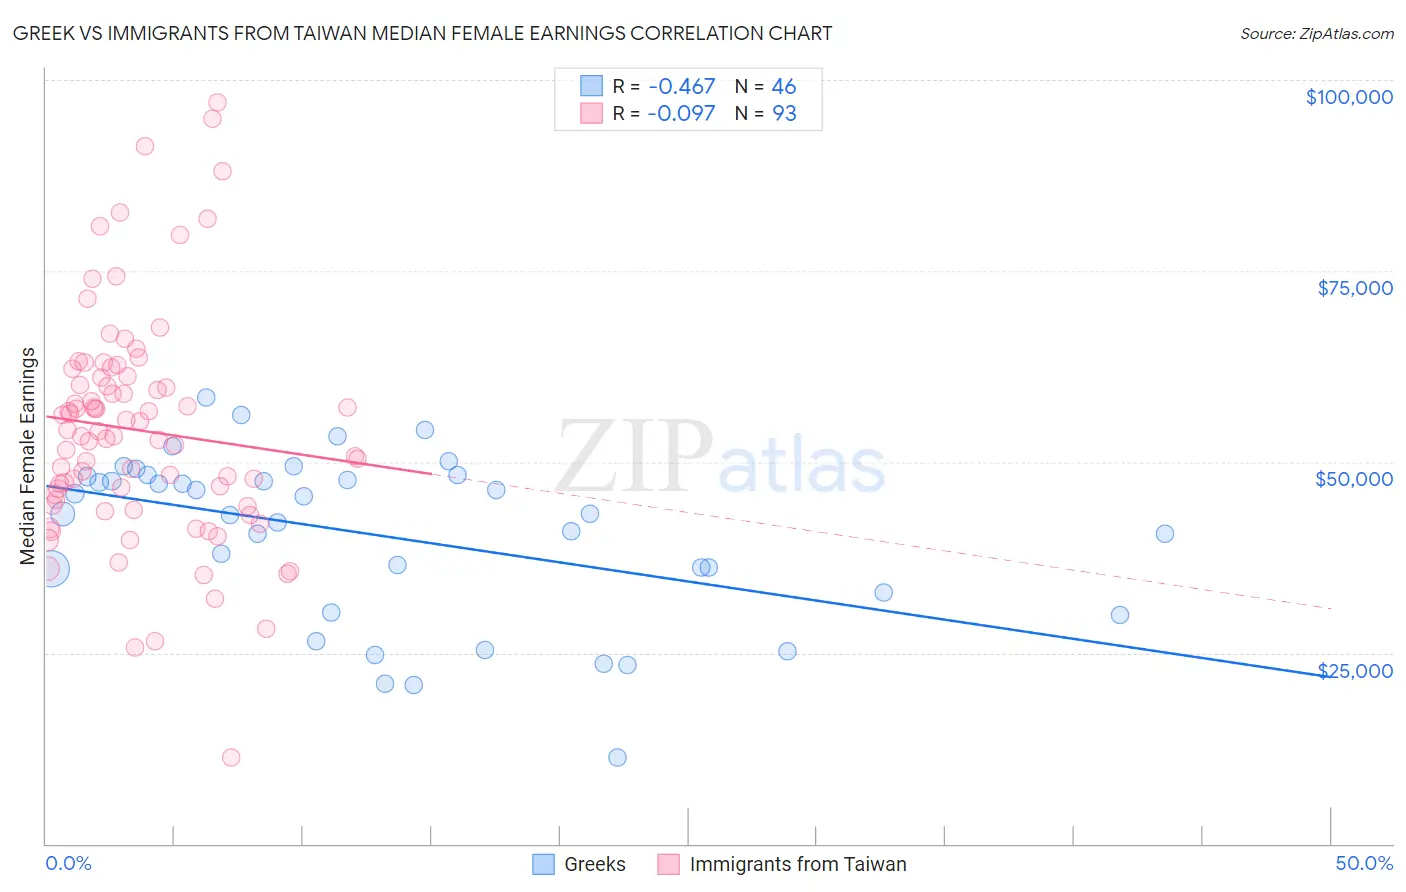 Greek vs Immigrants from Taiwan Median Female Earnings